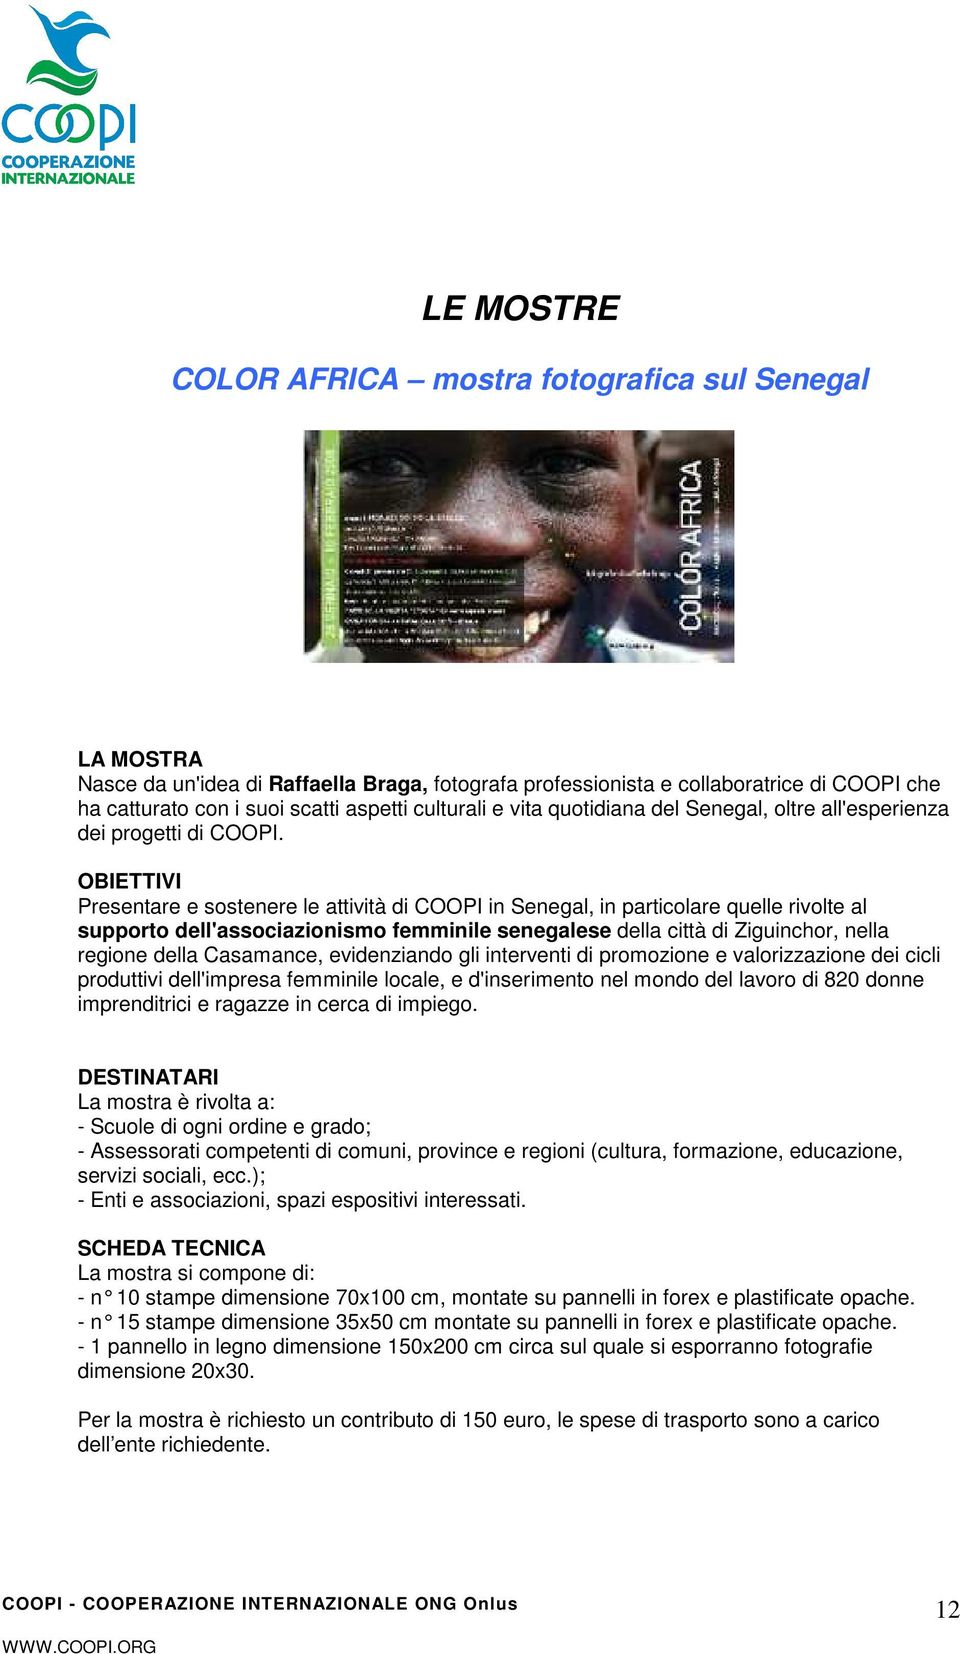 OBIETTIVI Presentare e sostenere le attività di COOPI in Senegal, in particolare quelle rivolte al supporto dell'associazionismo femminile senegalese della città di Ziguinchor, nella regione della